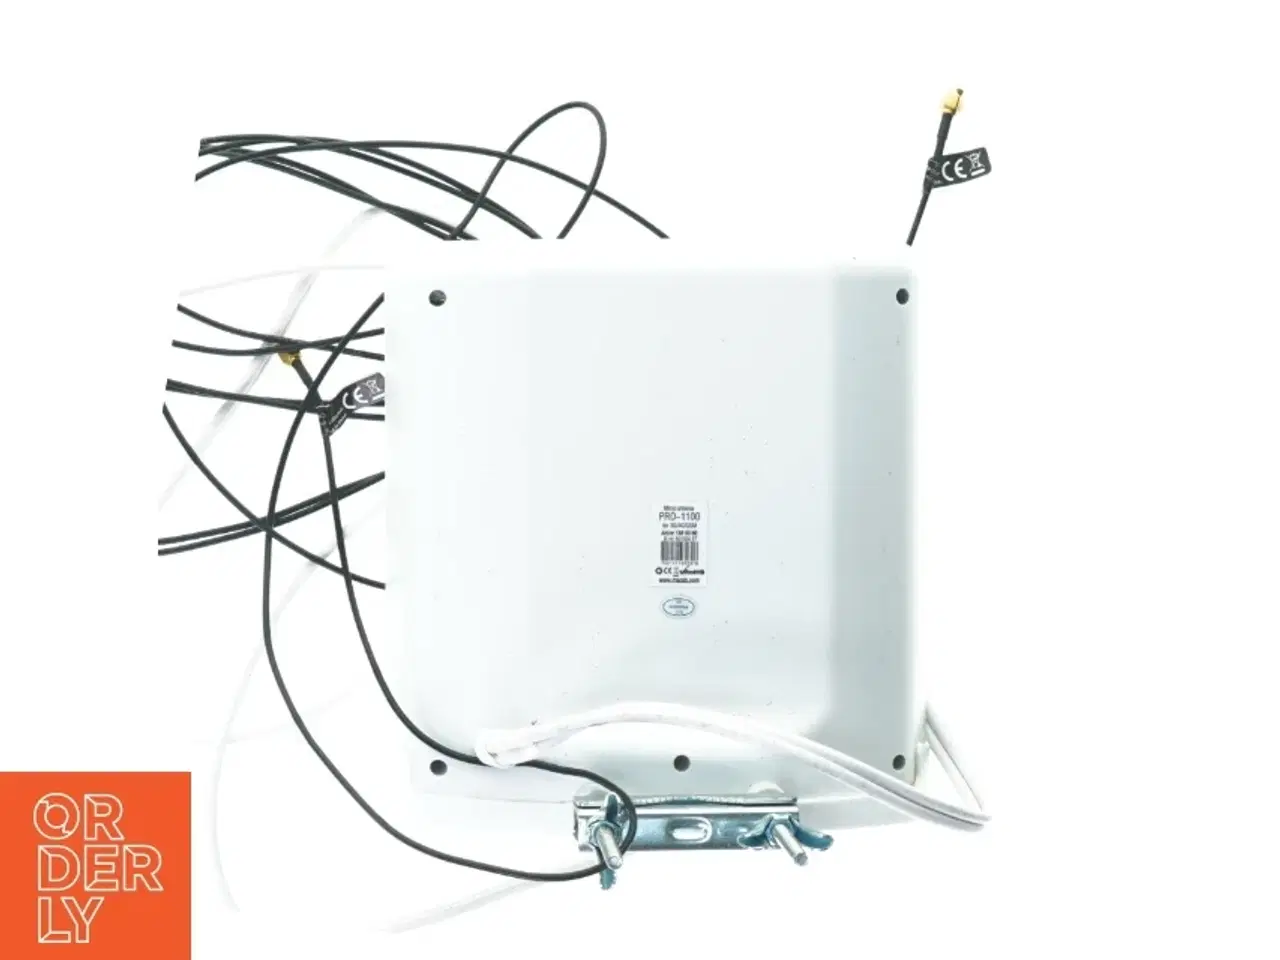 Billede 3 - udendørs antenne til mobil router fra Macab (str. 23 x 20 cm)